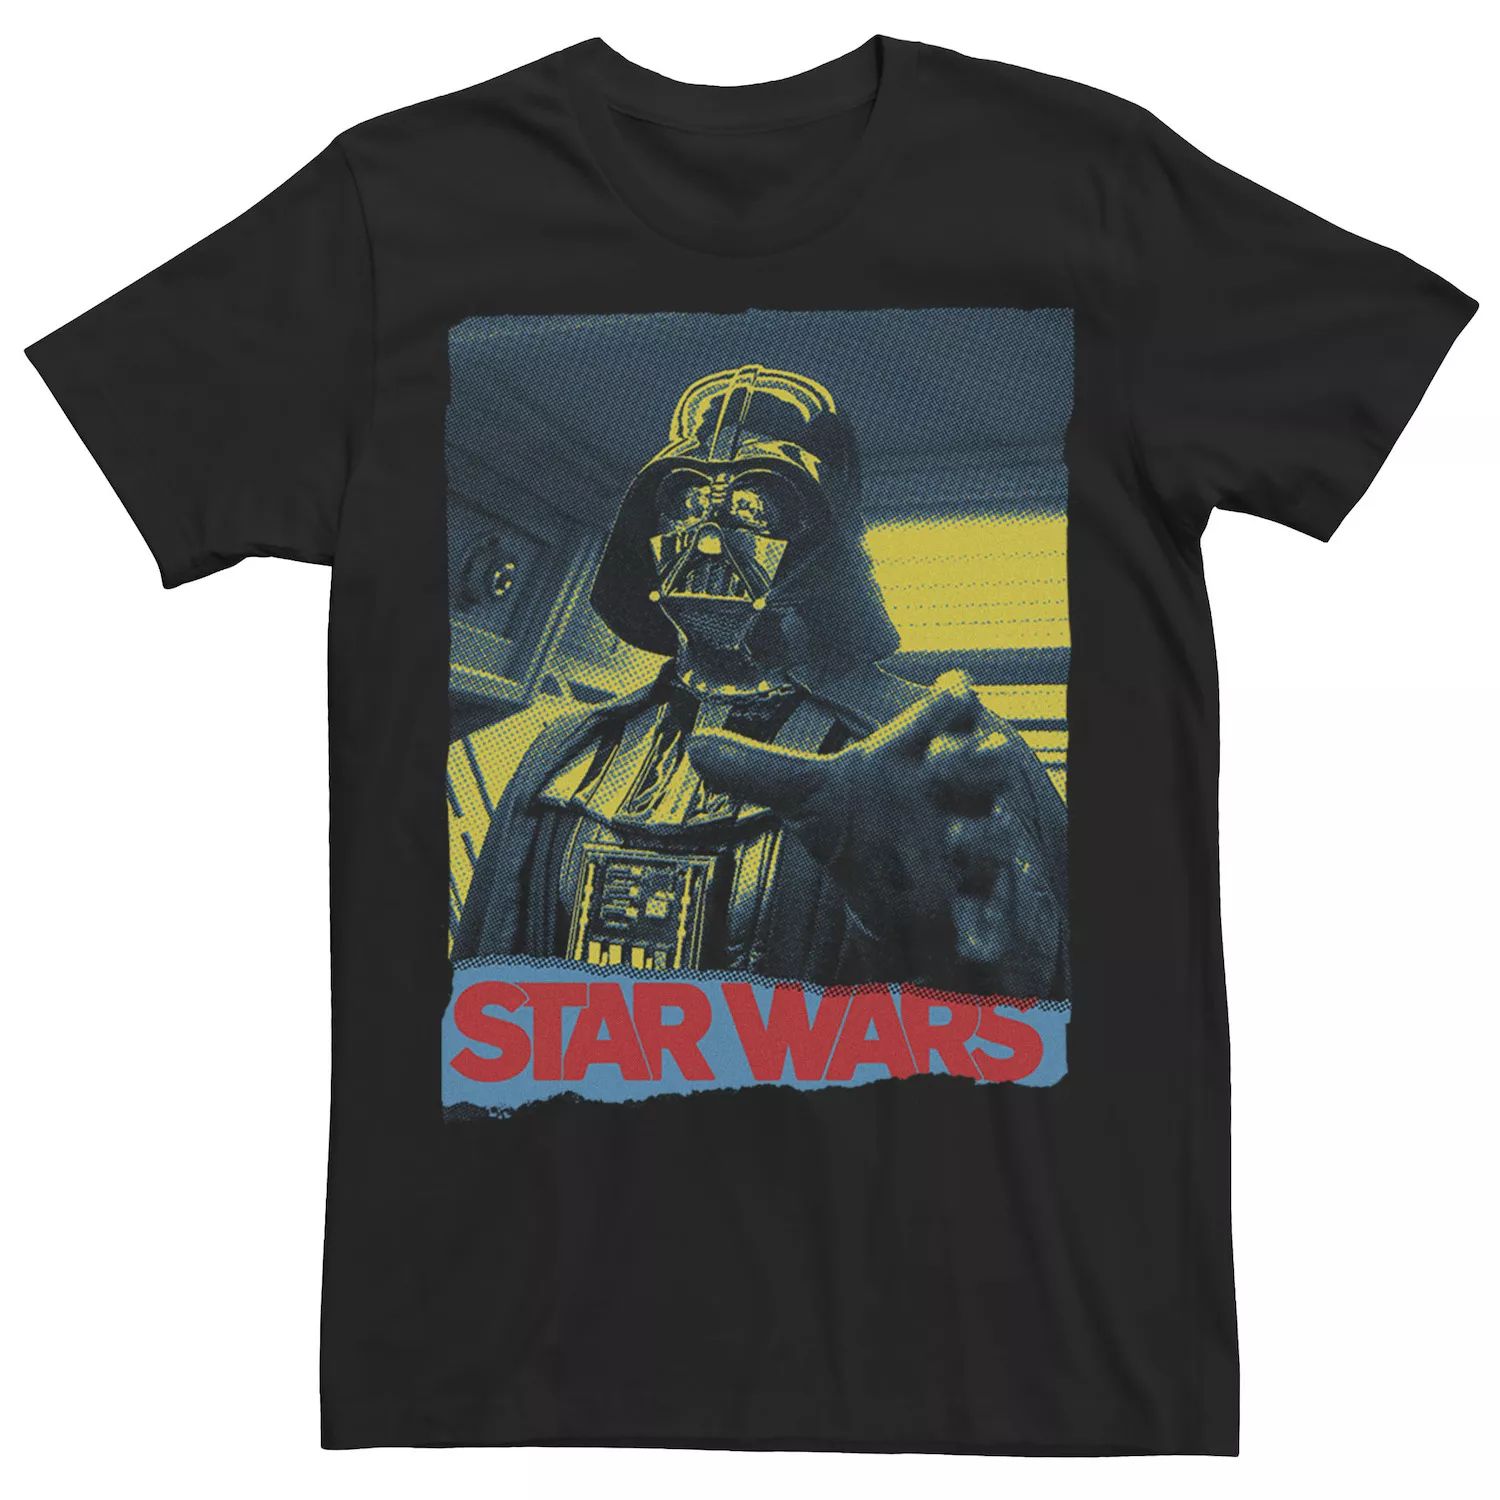 Мужская футболка с портретом Дарта Вейдера с удушающим захватом Star Wars